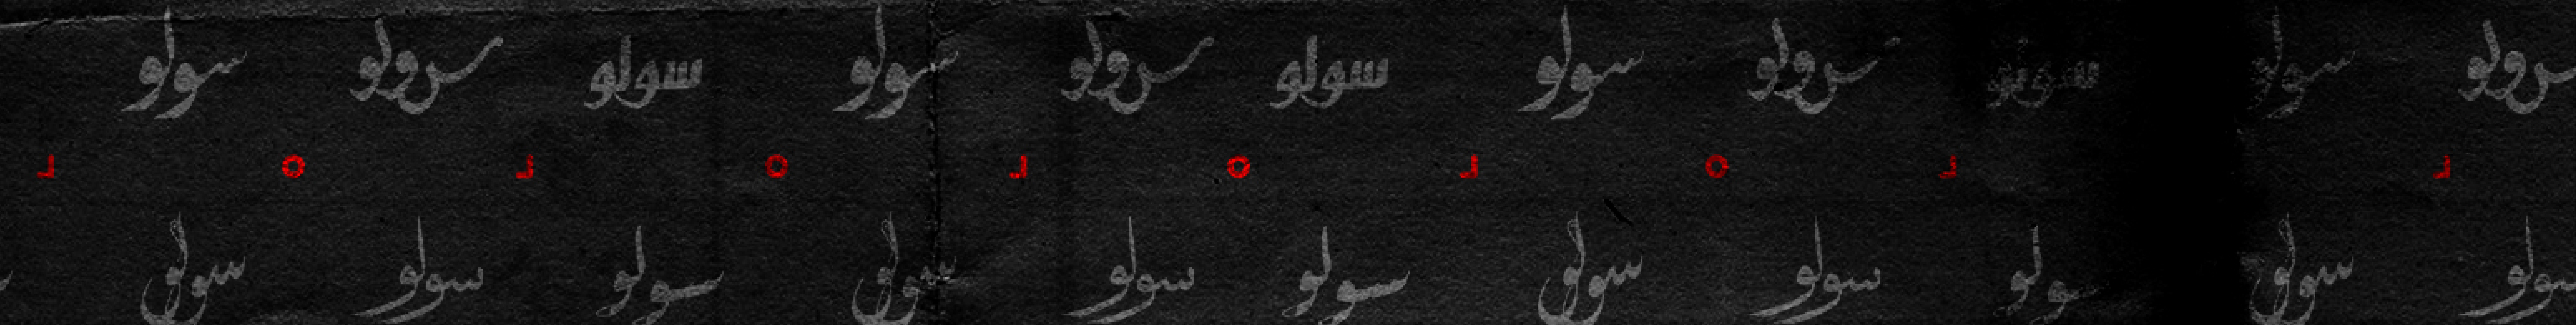 Hussein H. Abul Ma'ali's profile banner